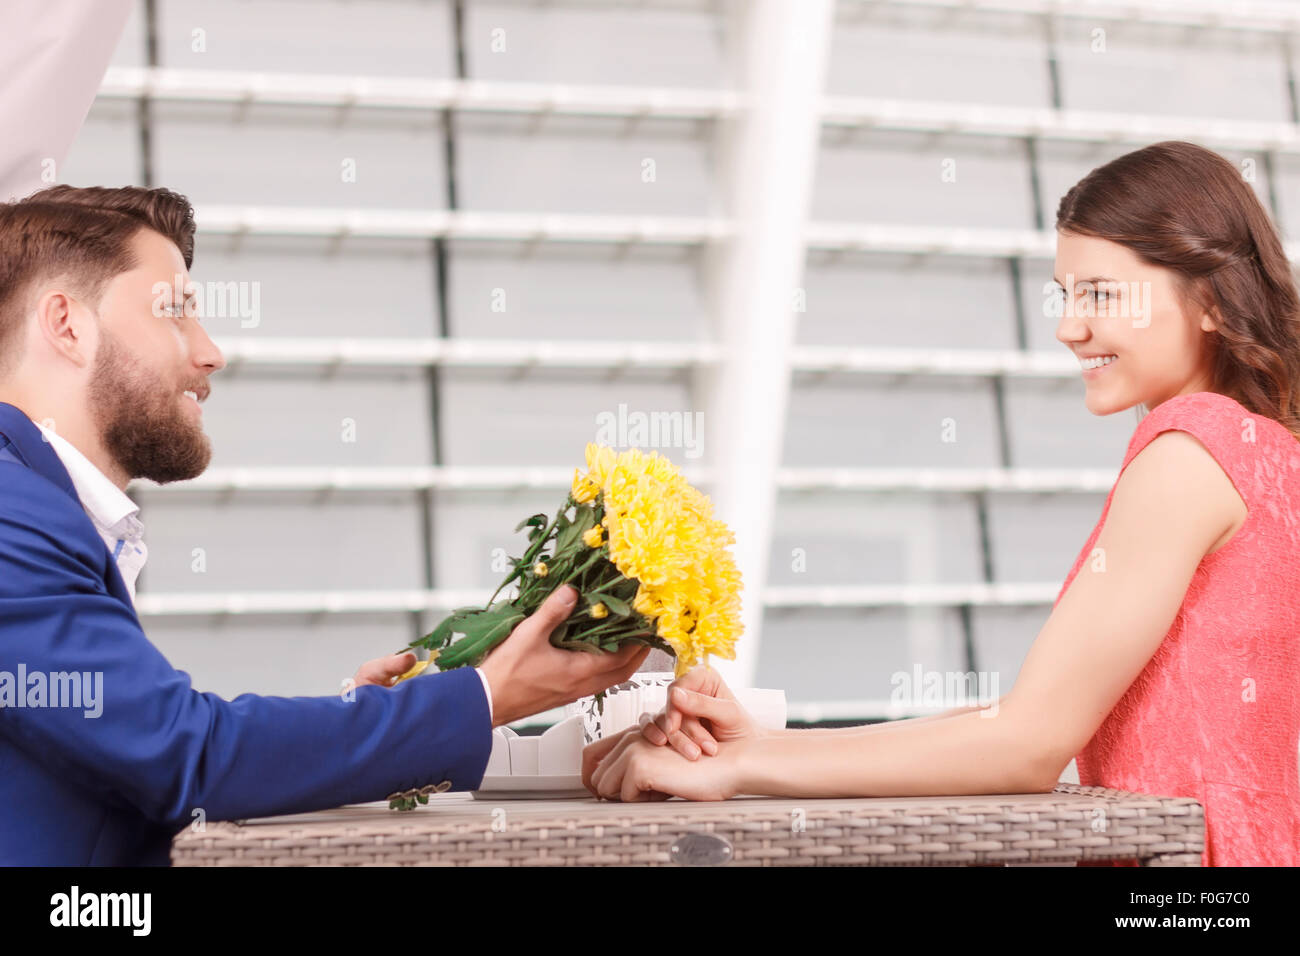 Gut aussehender Mann zu seiner Freundin Blumen schenken Stockfotografie -  Alamy